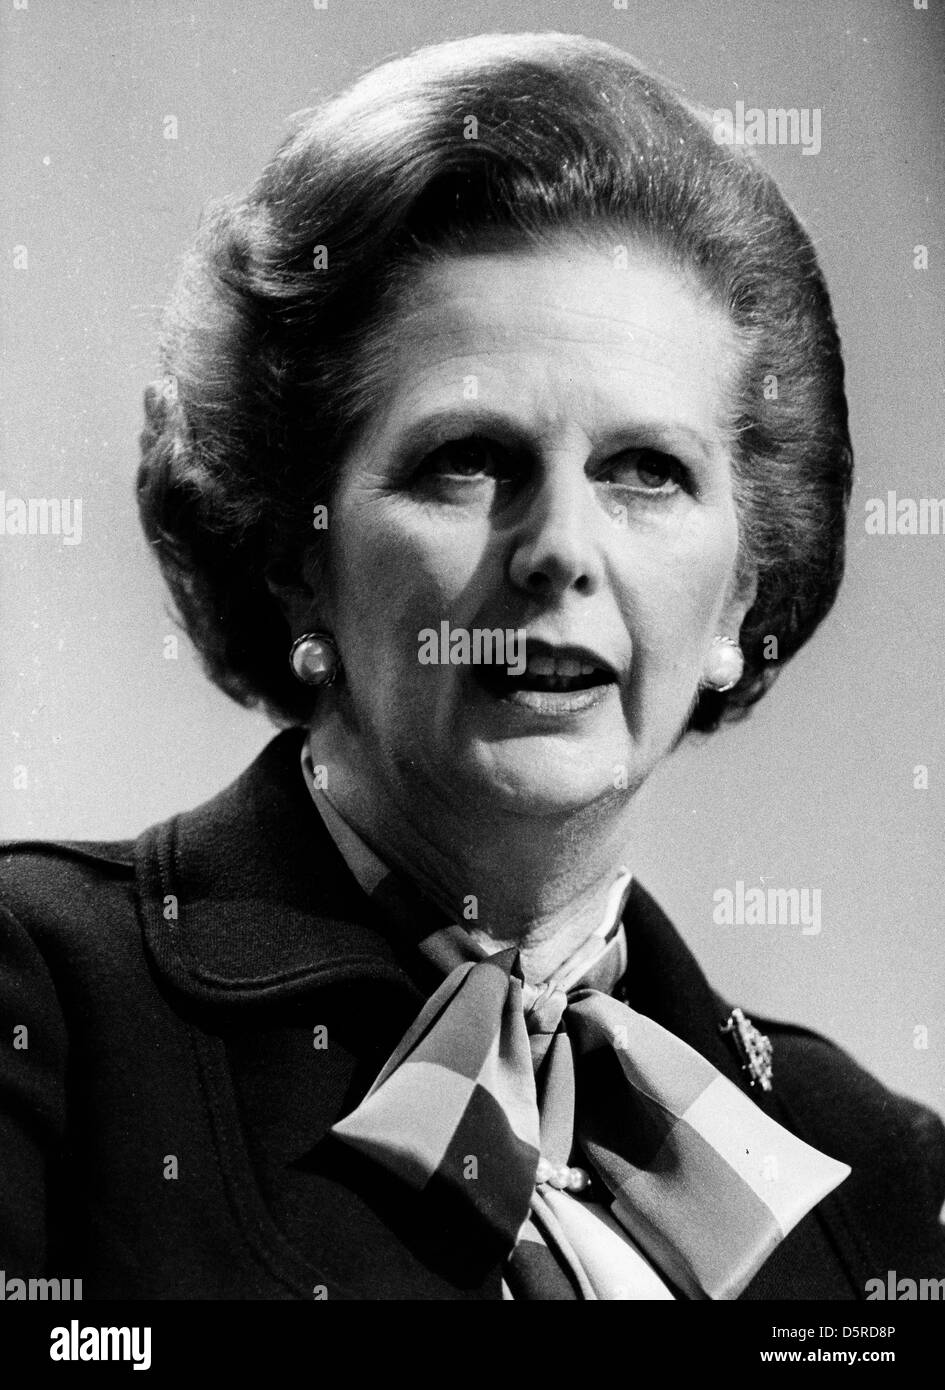 Archivo - la primera mujer primer ministro británico (1979-1990) Margaret Thatcher, líder del Partido Conservador, ha fallecido a los 87 años de edad su portavoz dijo el lunes. Foto: El 5 de enero, 1980 - Londres, Inglaterra, Reino Unido - Margaret Thatcher hablando durante una conferencia. Crédito: Zuma Press, Inc. / Alamy Live News Foto de stock